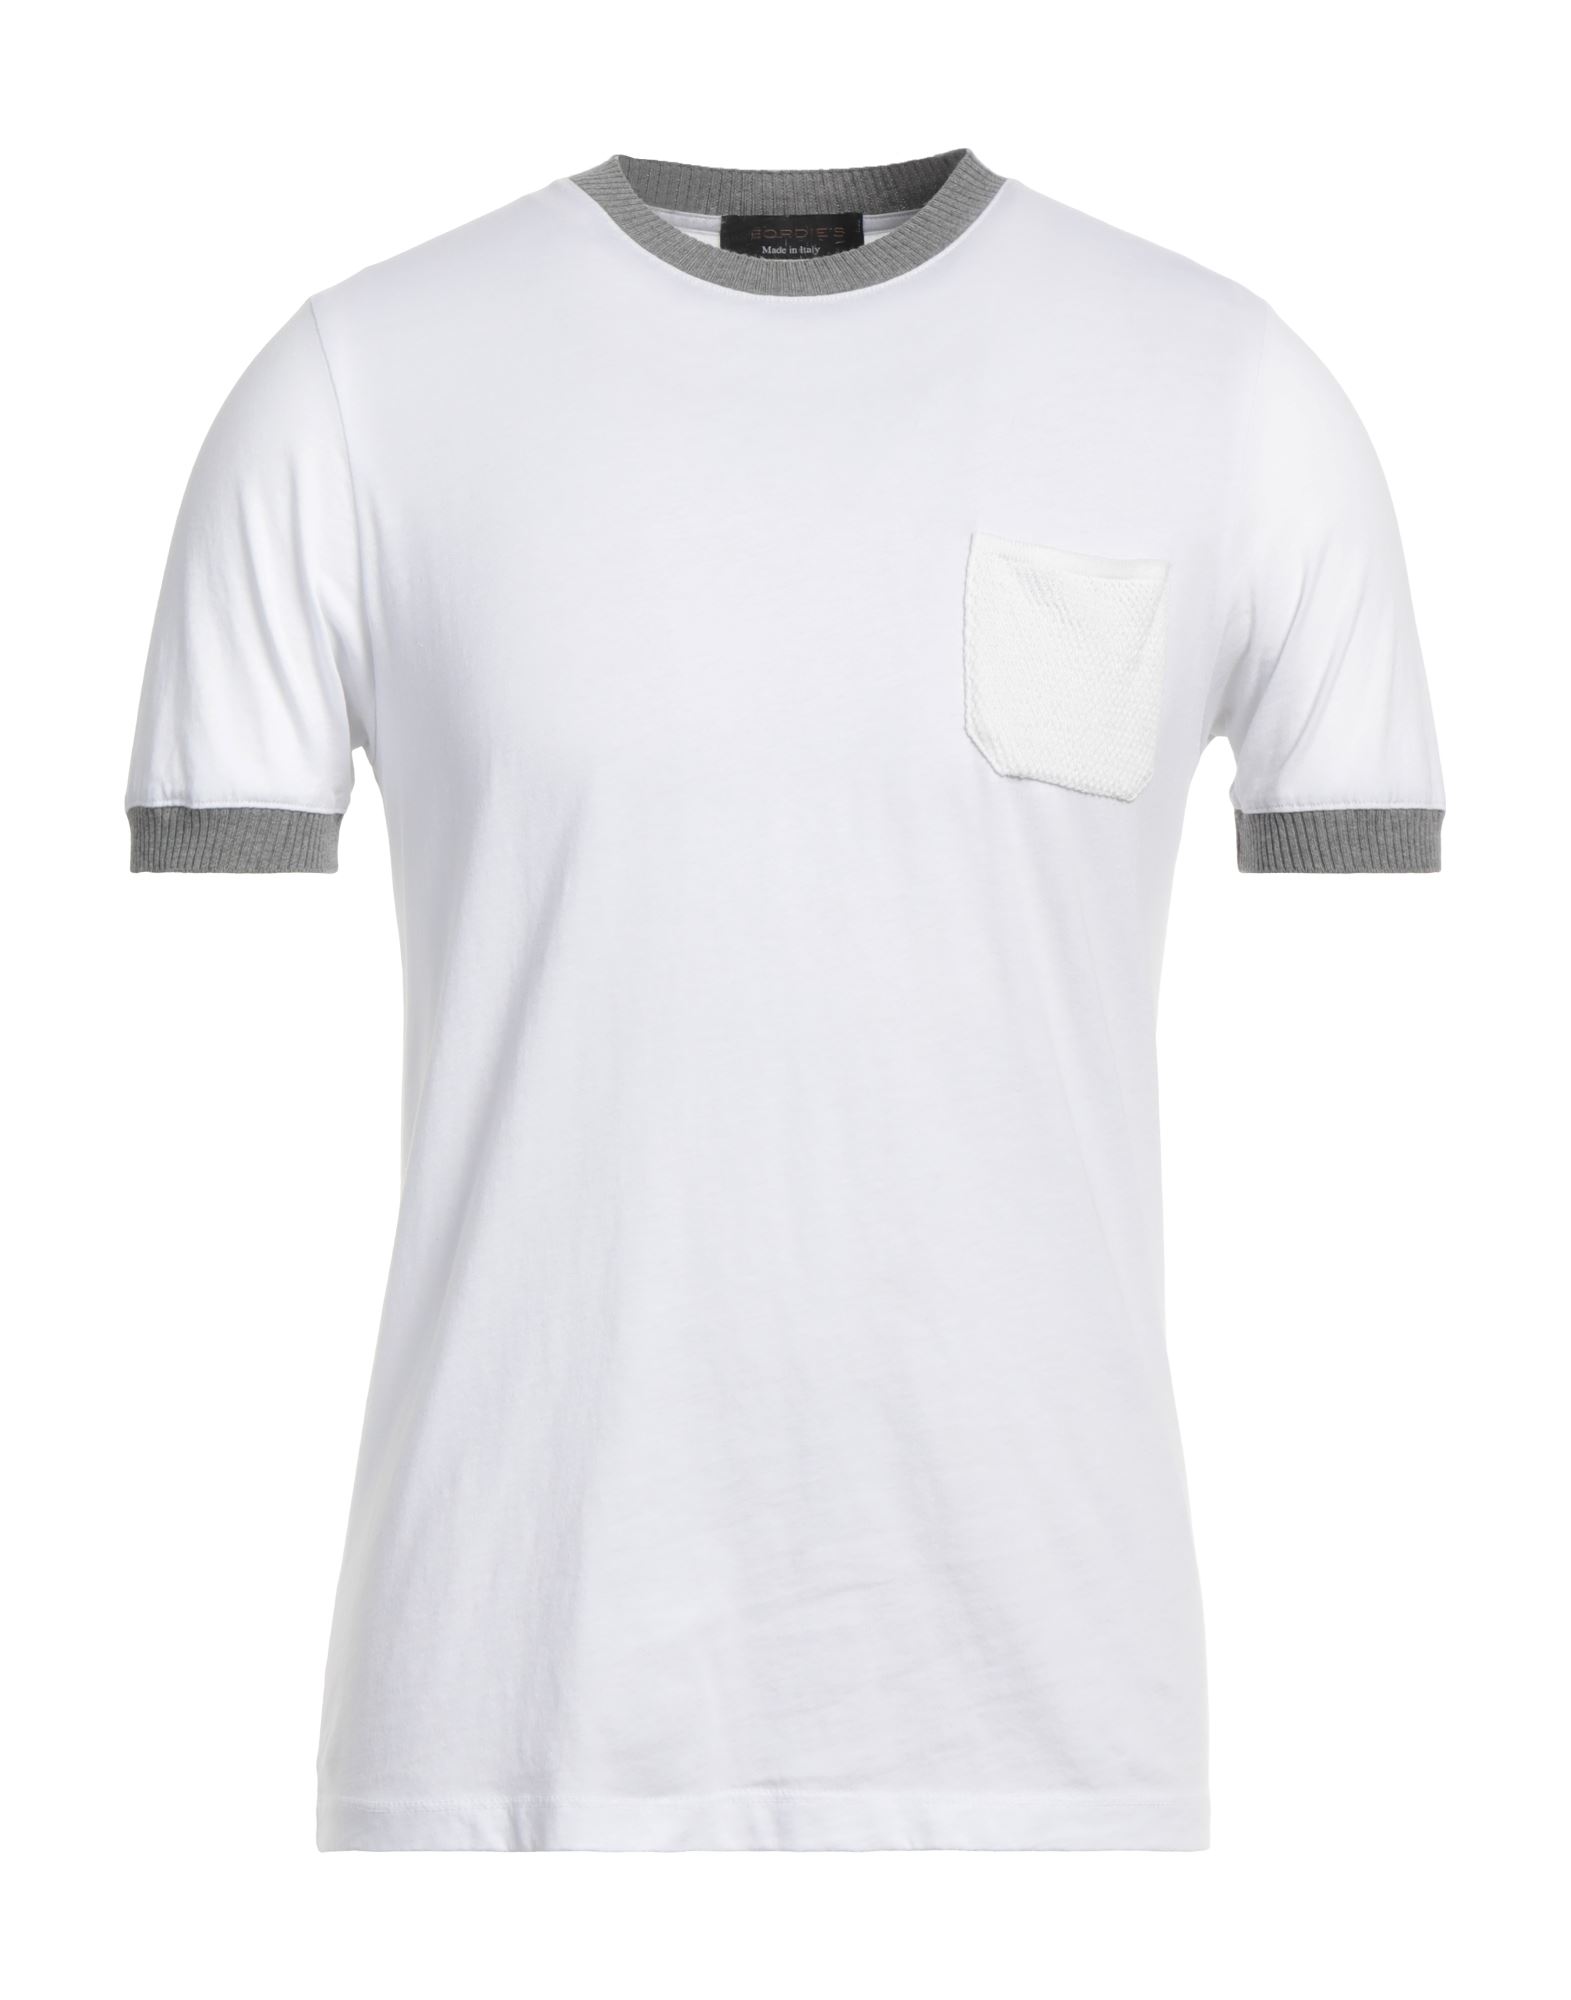 Jeordie's Man T-shirt White Size L Cotton